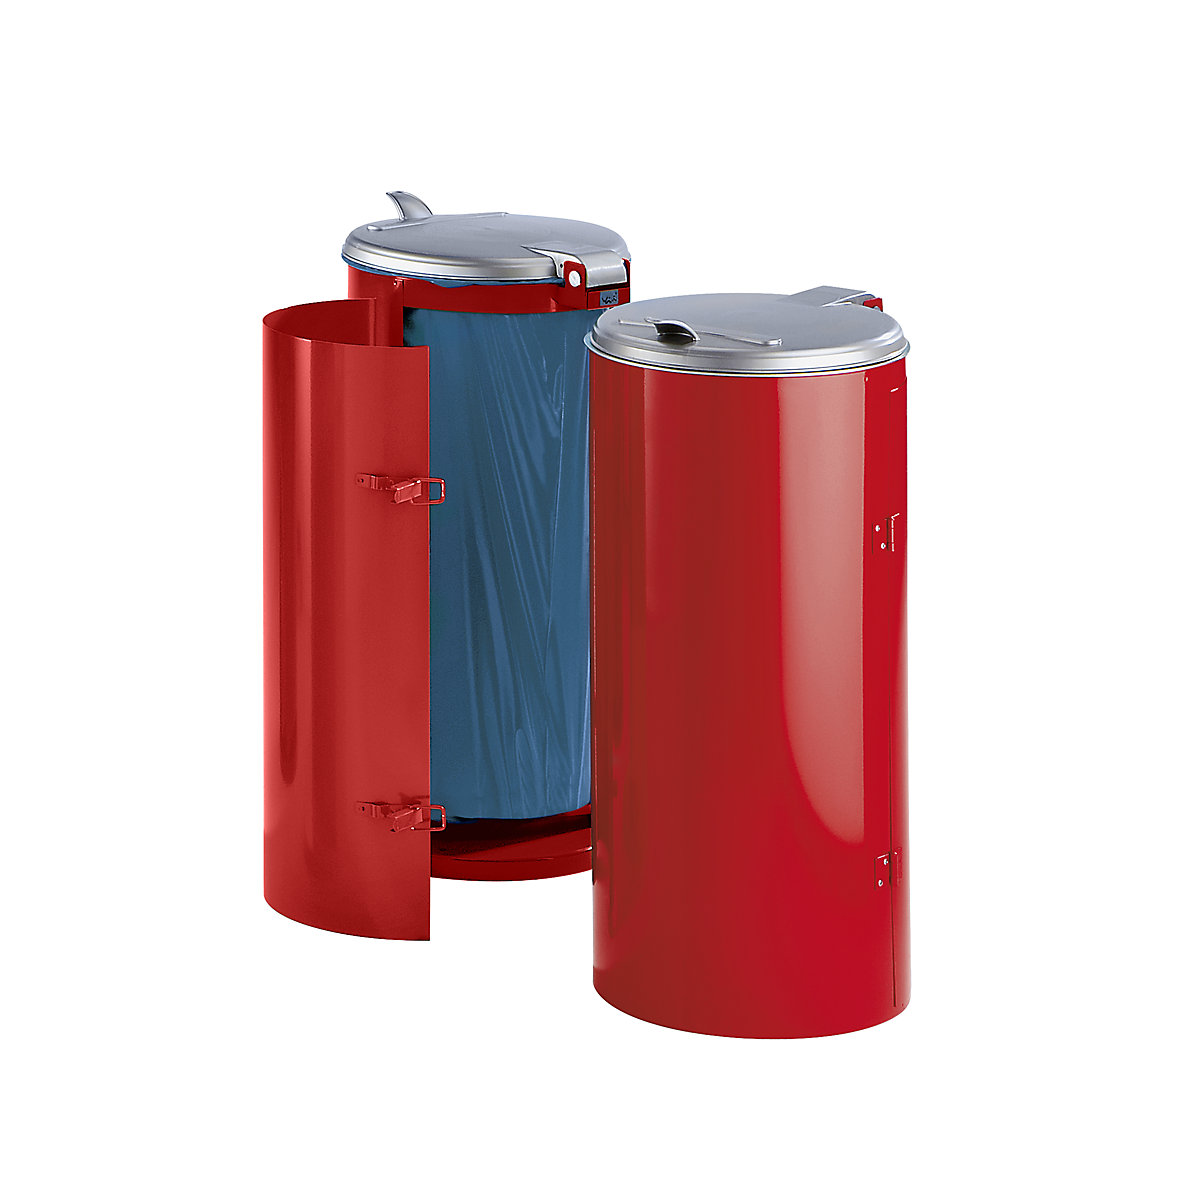 Colector de residuos de chapa de acero – VAR, para 120 l de capacidad, con puerta de una hoja, rojo con tapa de plástico plateada-5